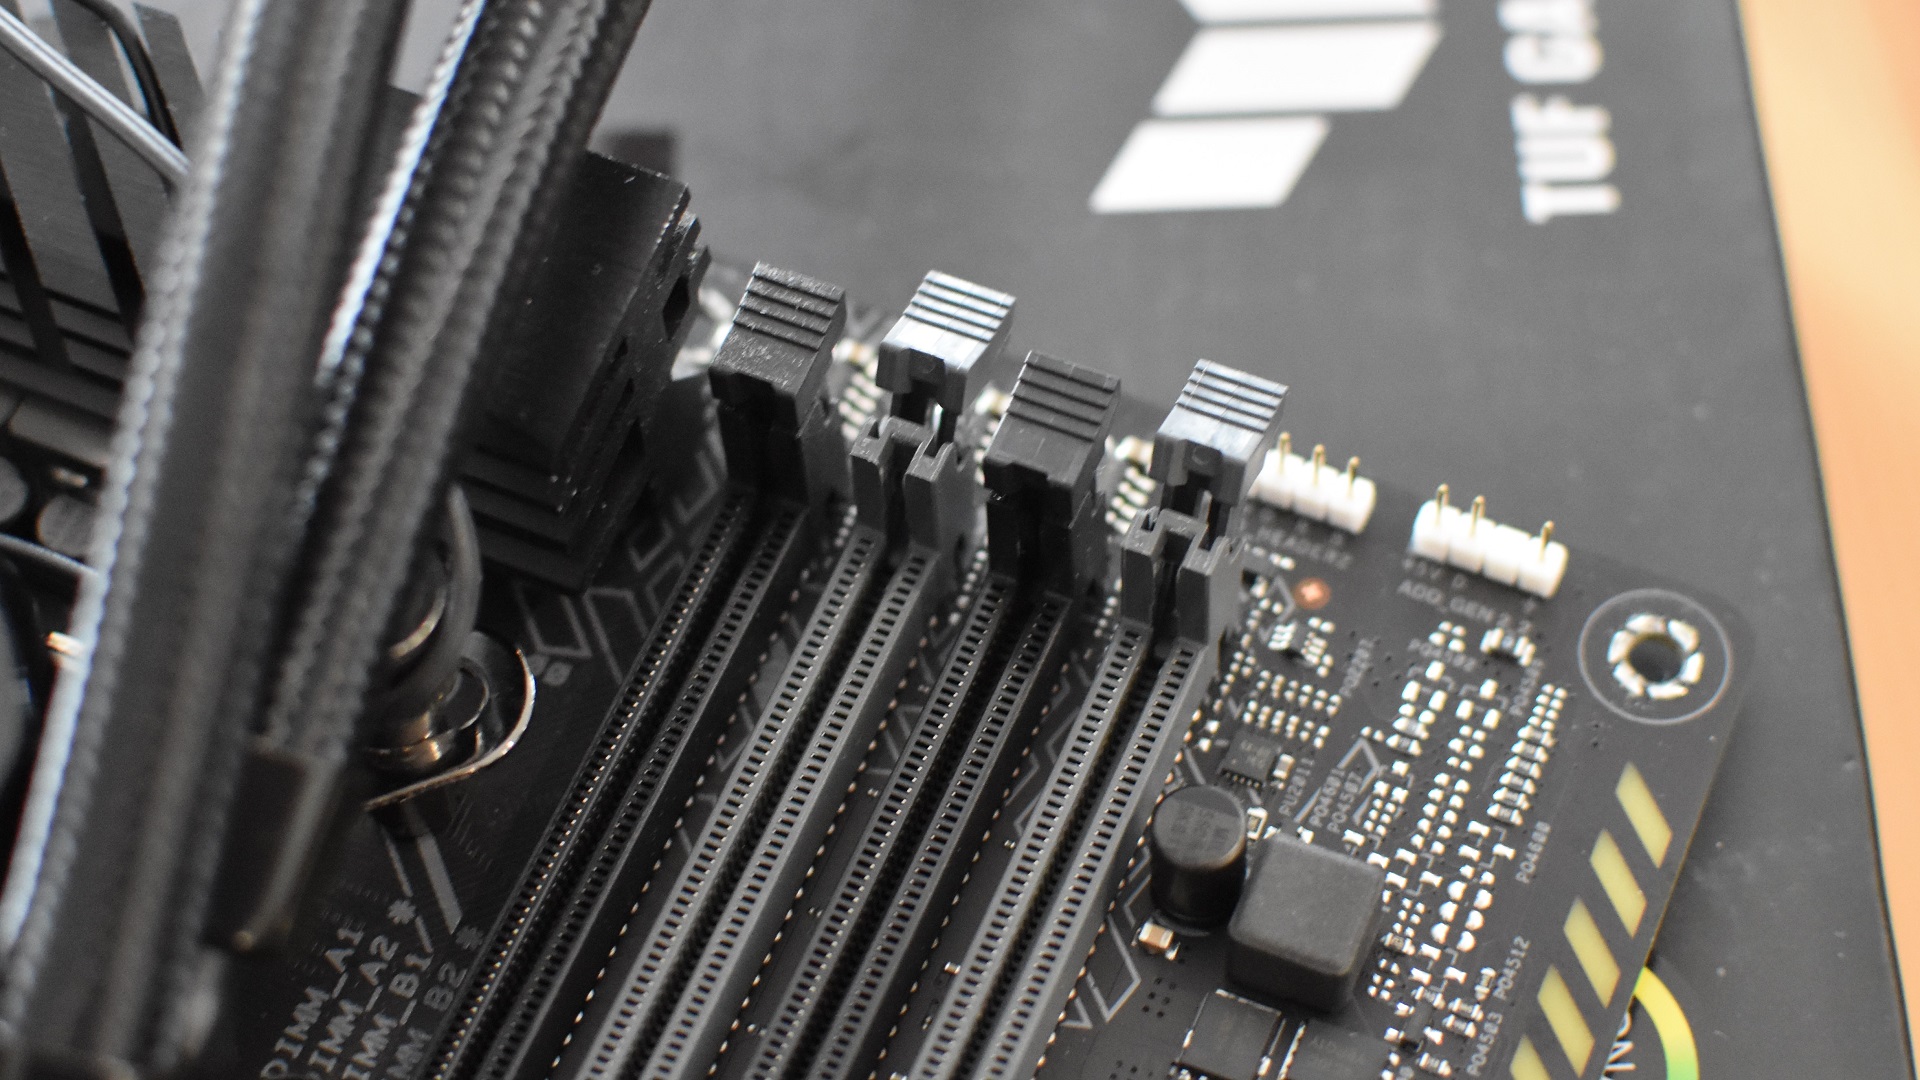 Paso 2 de cómo instalar RAM: identifique las ranuras de RAM correctas para usar, luego abra sus clips de retención de plástico.